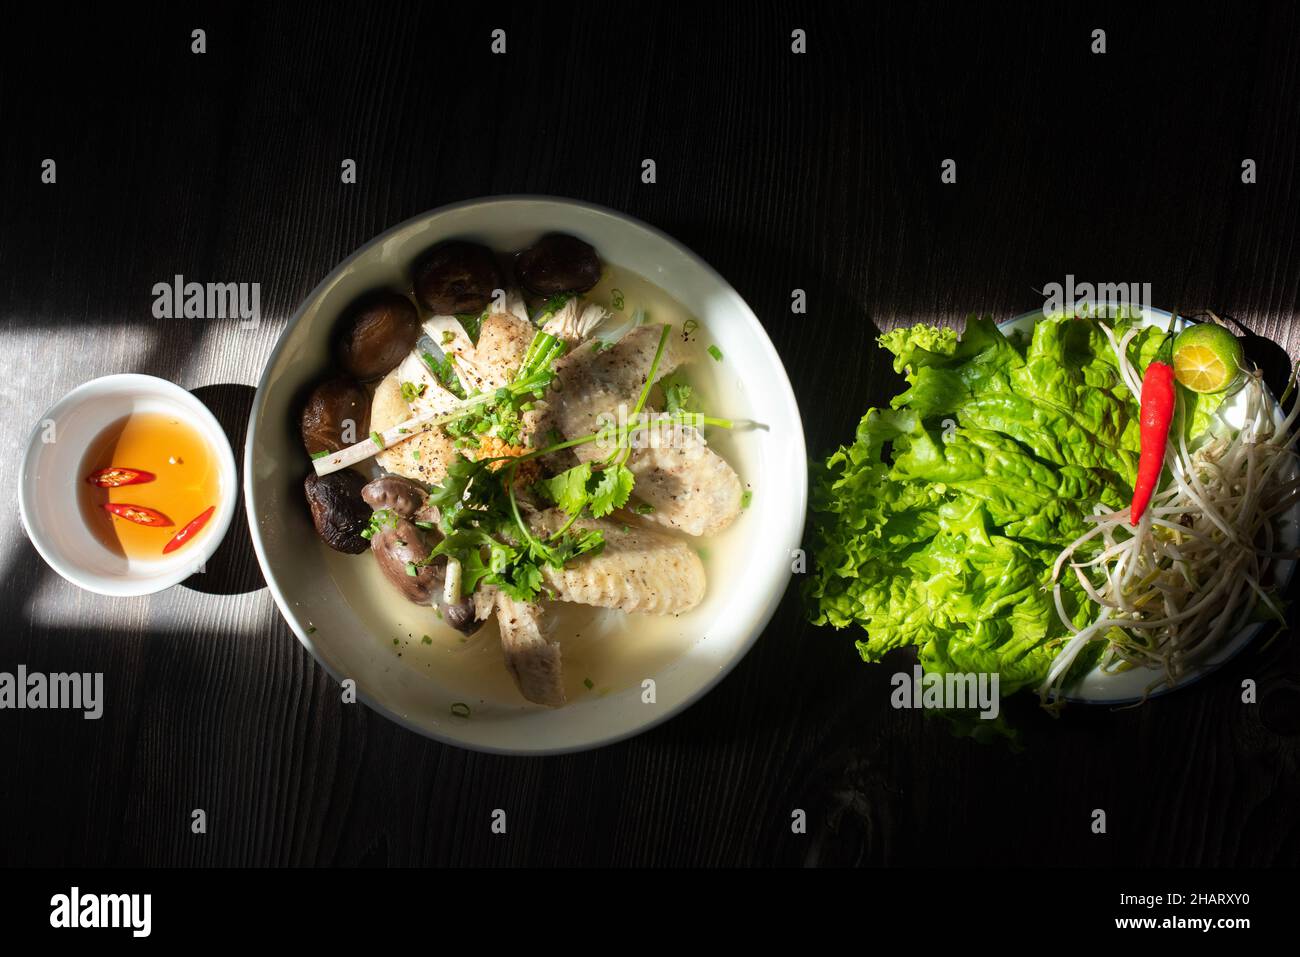 La soupe de nouilles aux champignons de poulet est un plat de petit déjeuner très populaire au Vietnam.Les ingrédients comprennent des nouilles de riz, des champignons, du poulet, des légumes et du spi Banque D'Images